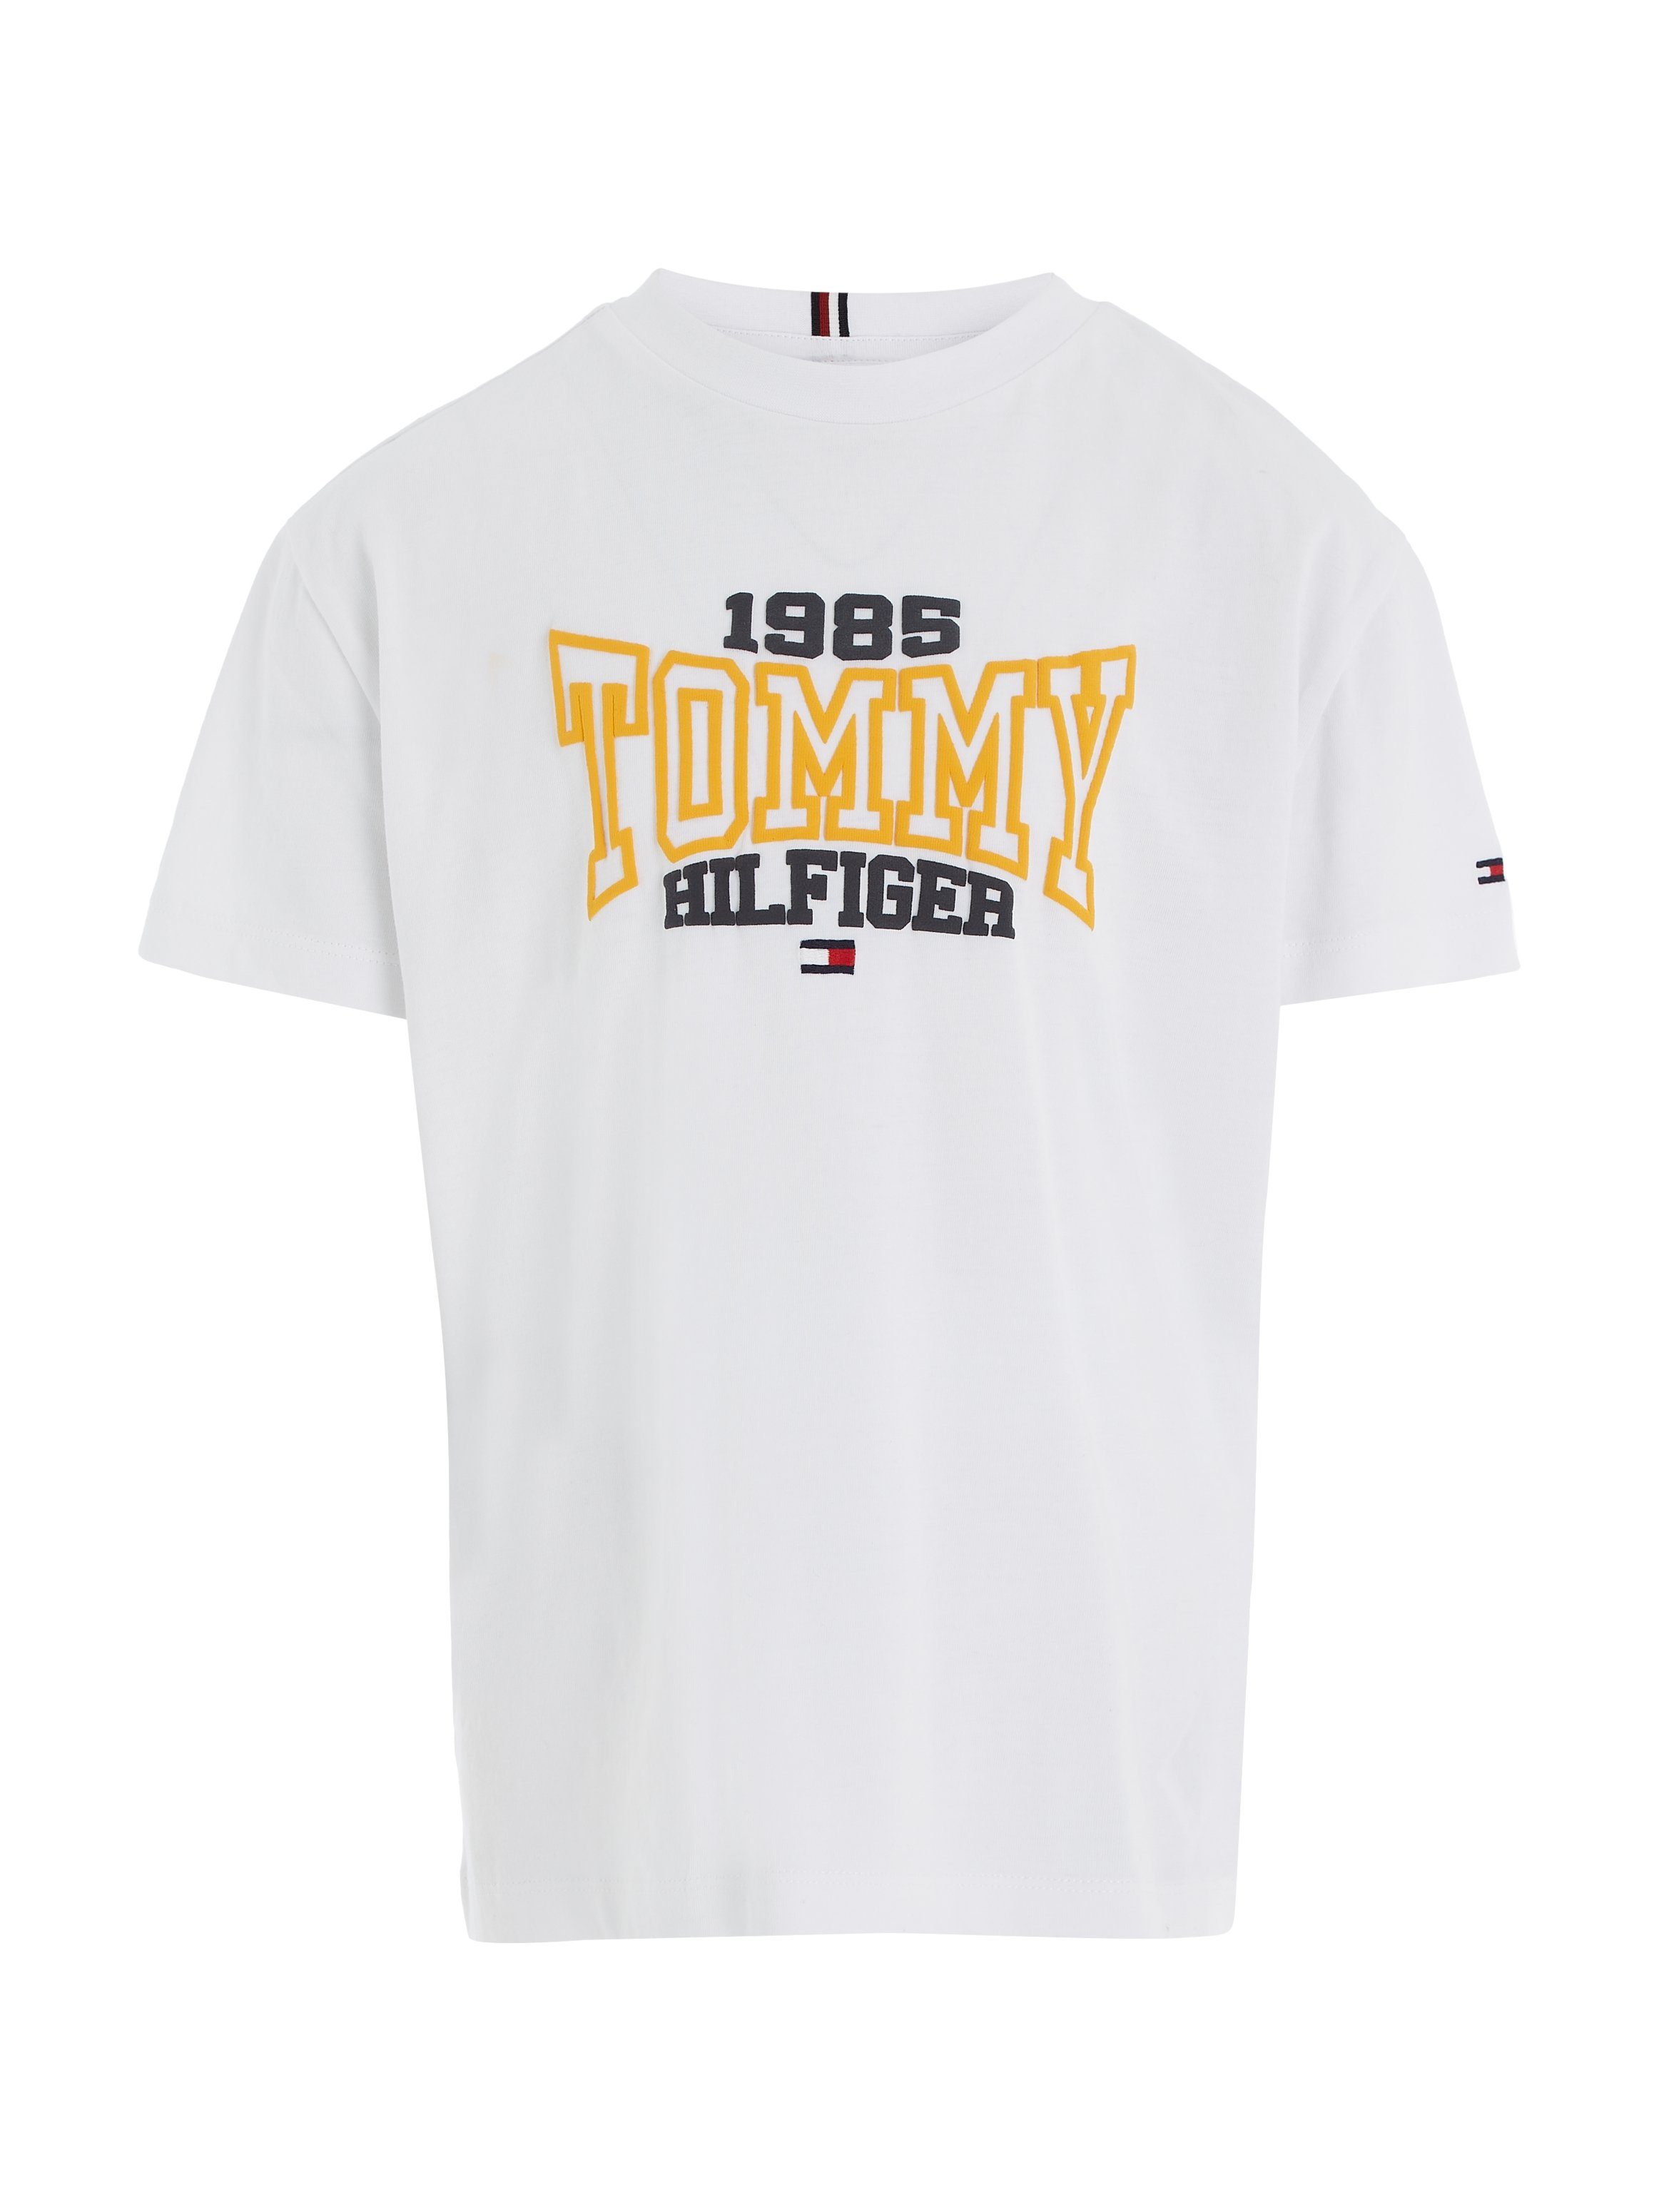 Tommy Hilfiger T-Shirt TOMMY modischem Tommy S/S 1985 1985 Varsity TEE mit White Print VARSITY Hilfgier